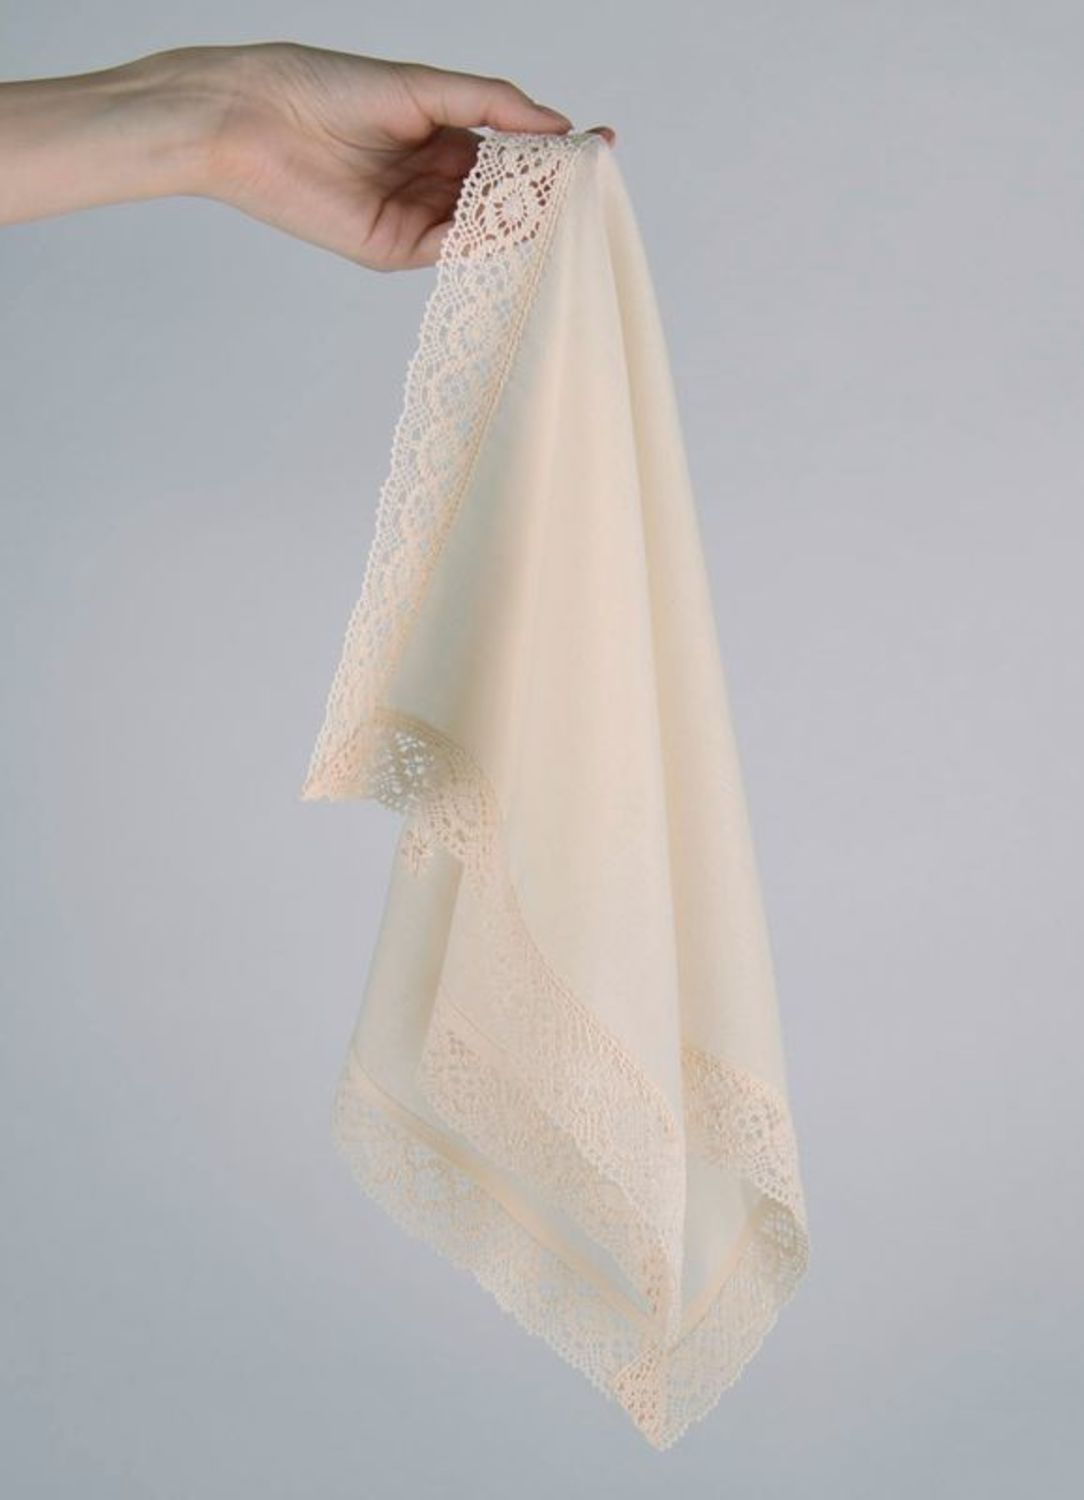 Belle serviette décorative faite main photo 3